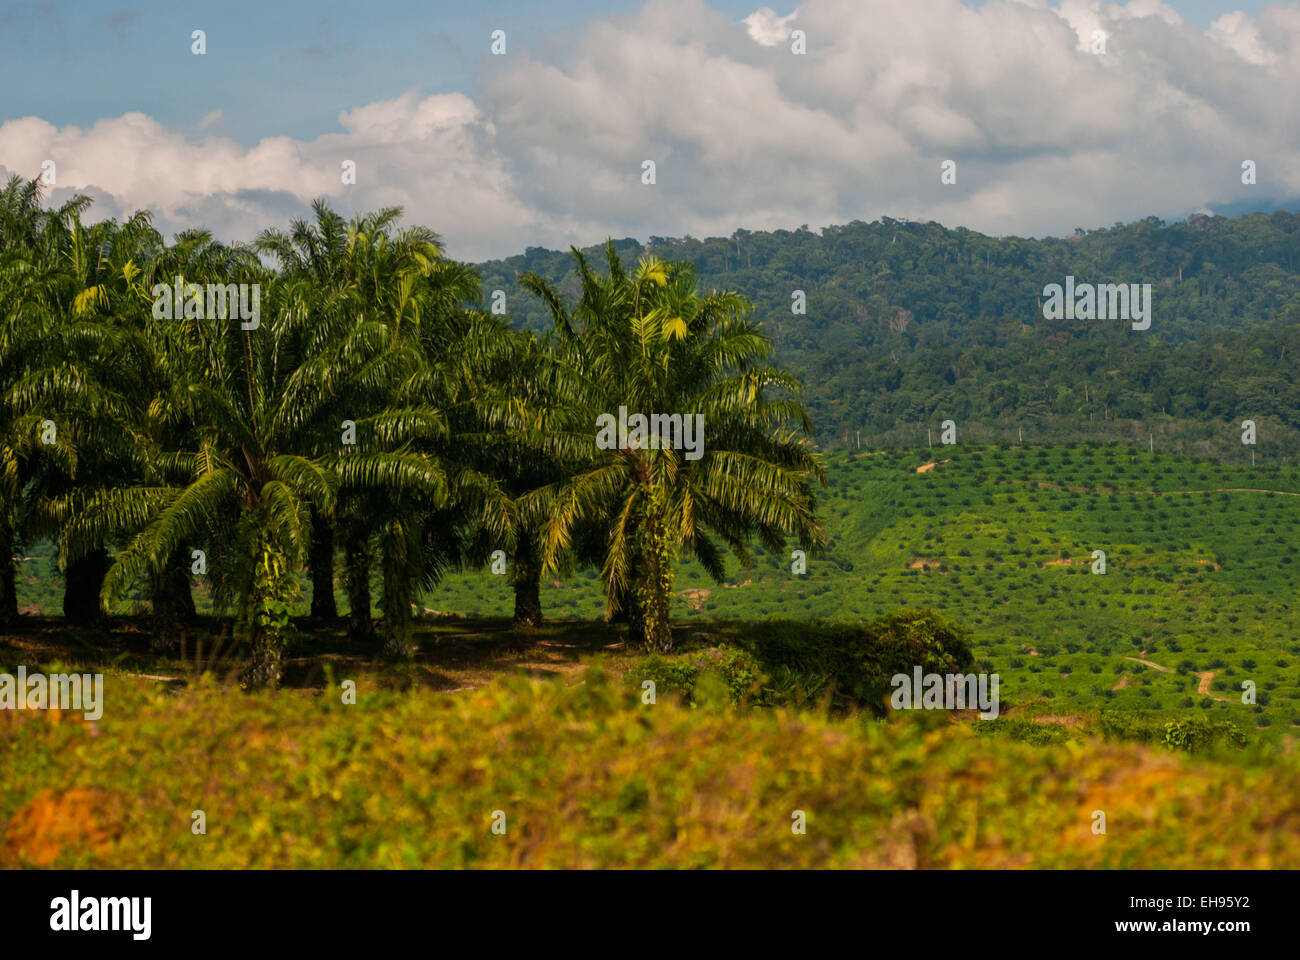 Plantation de palmier à huile à Langkat, dans le nord de Sumatra, en Indonésie. Banque D'Images